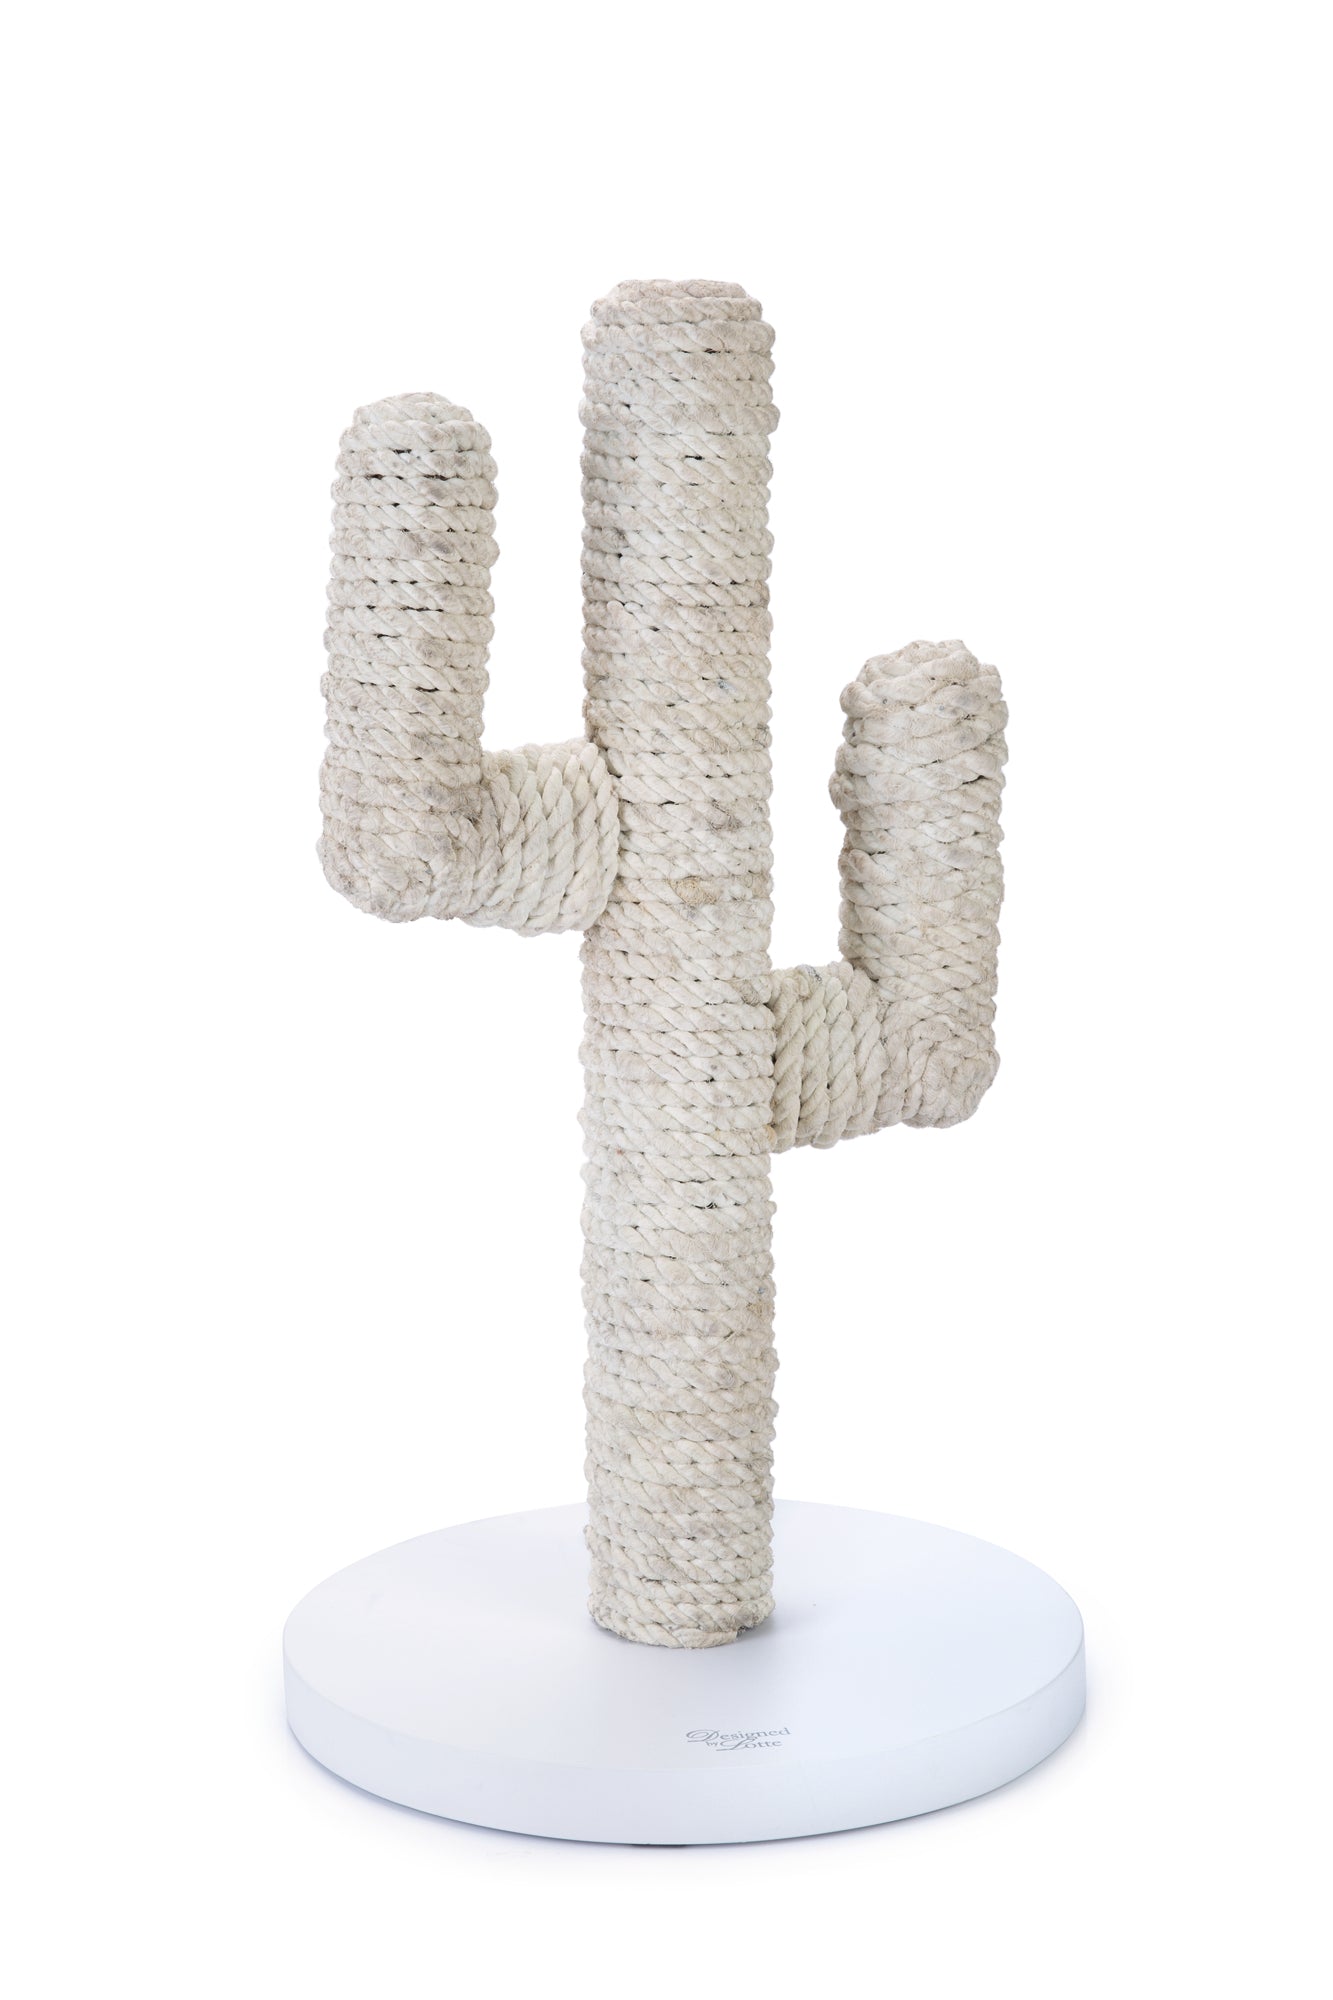 Cactus krabpaal witte kleur 60 cm hoog van designed by lotte